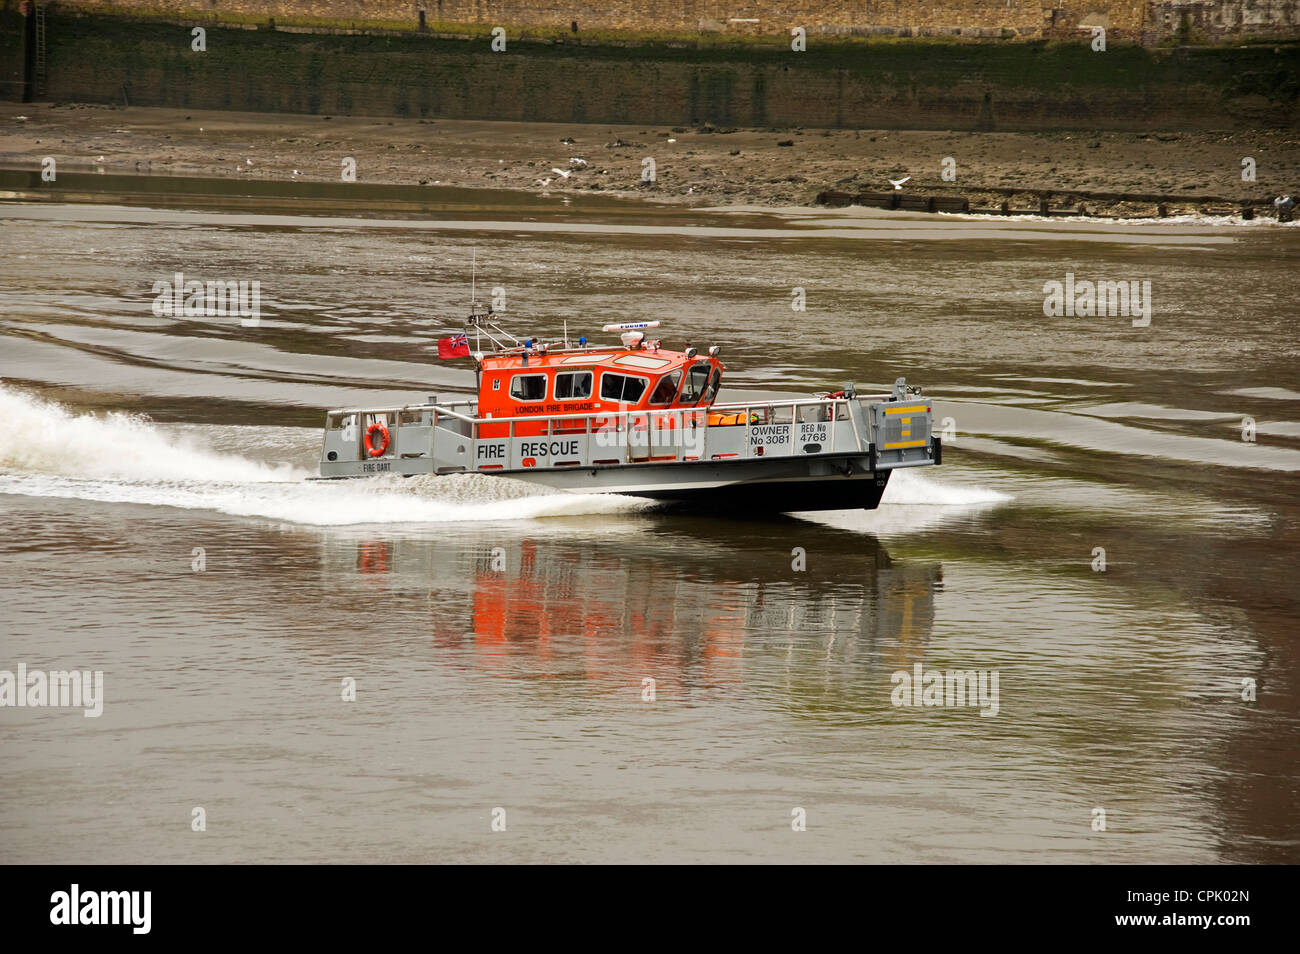 Fire rescue boat Stock Photo